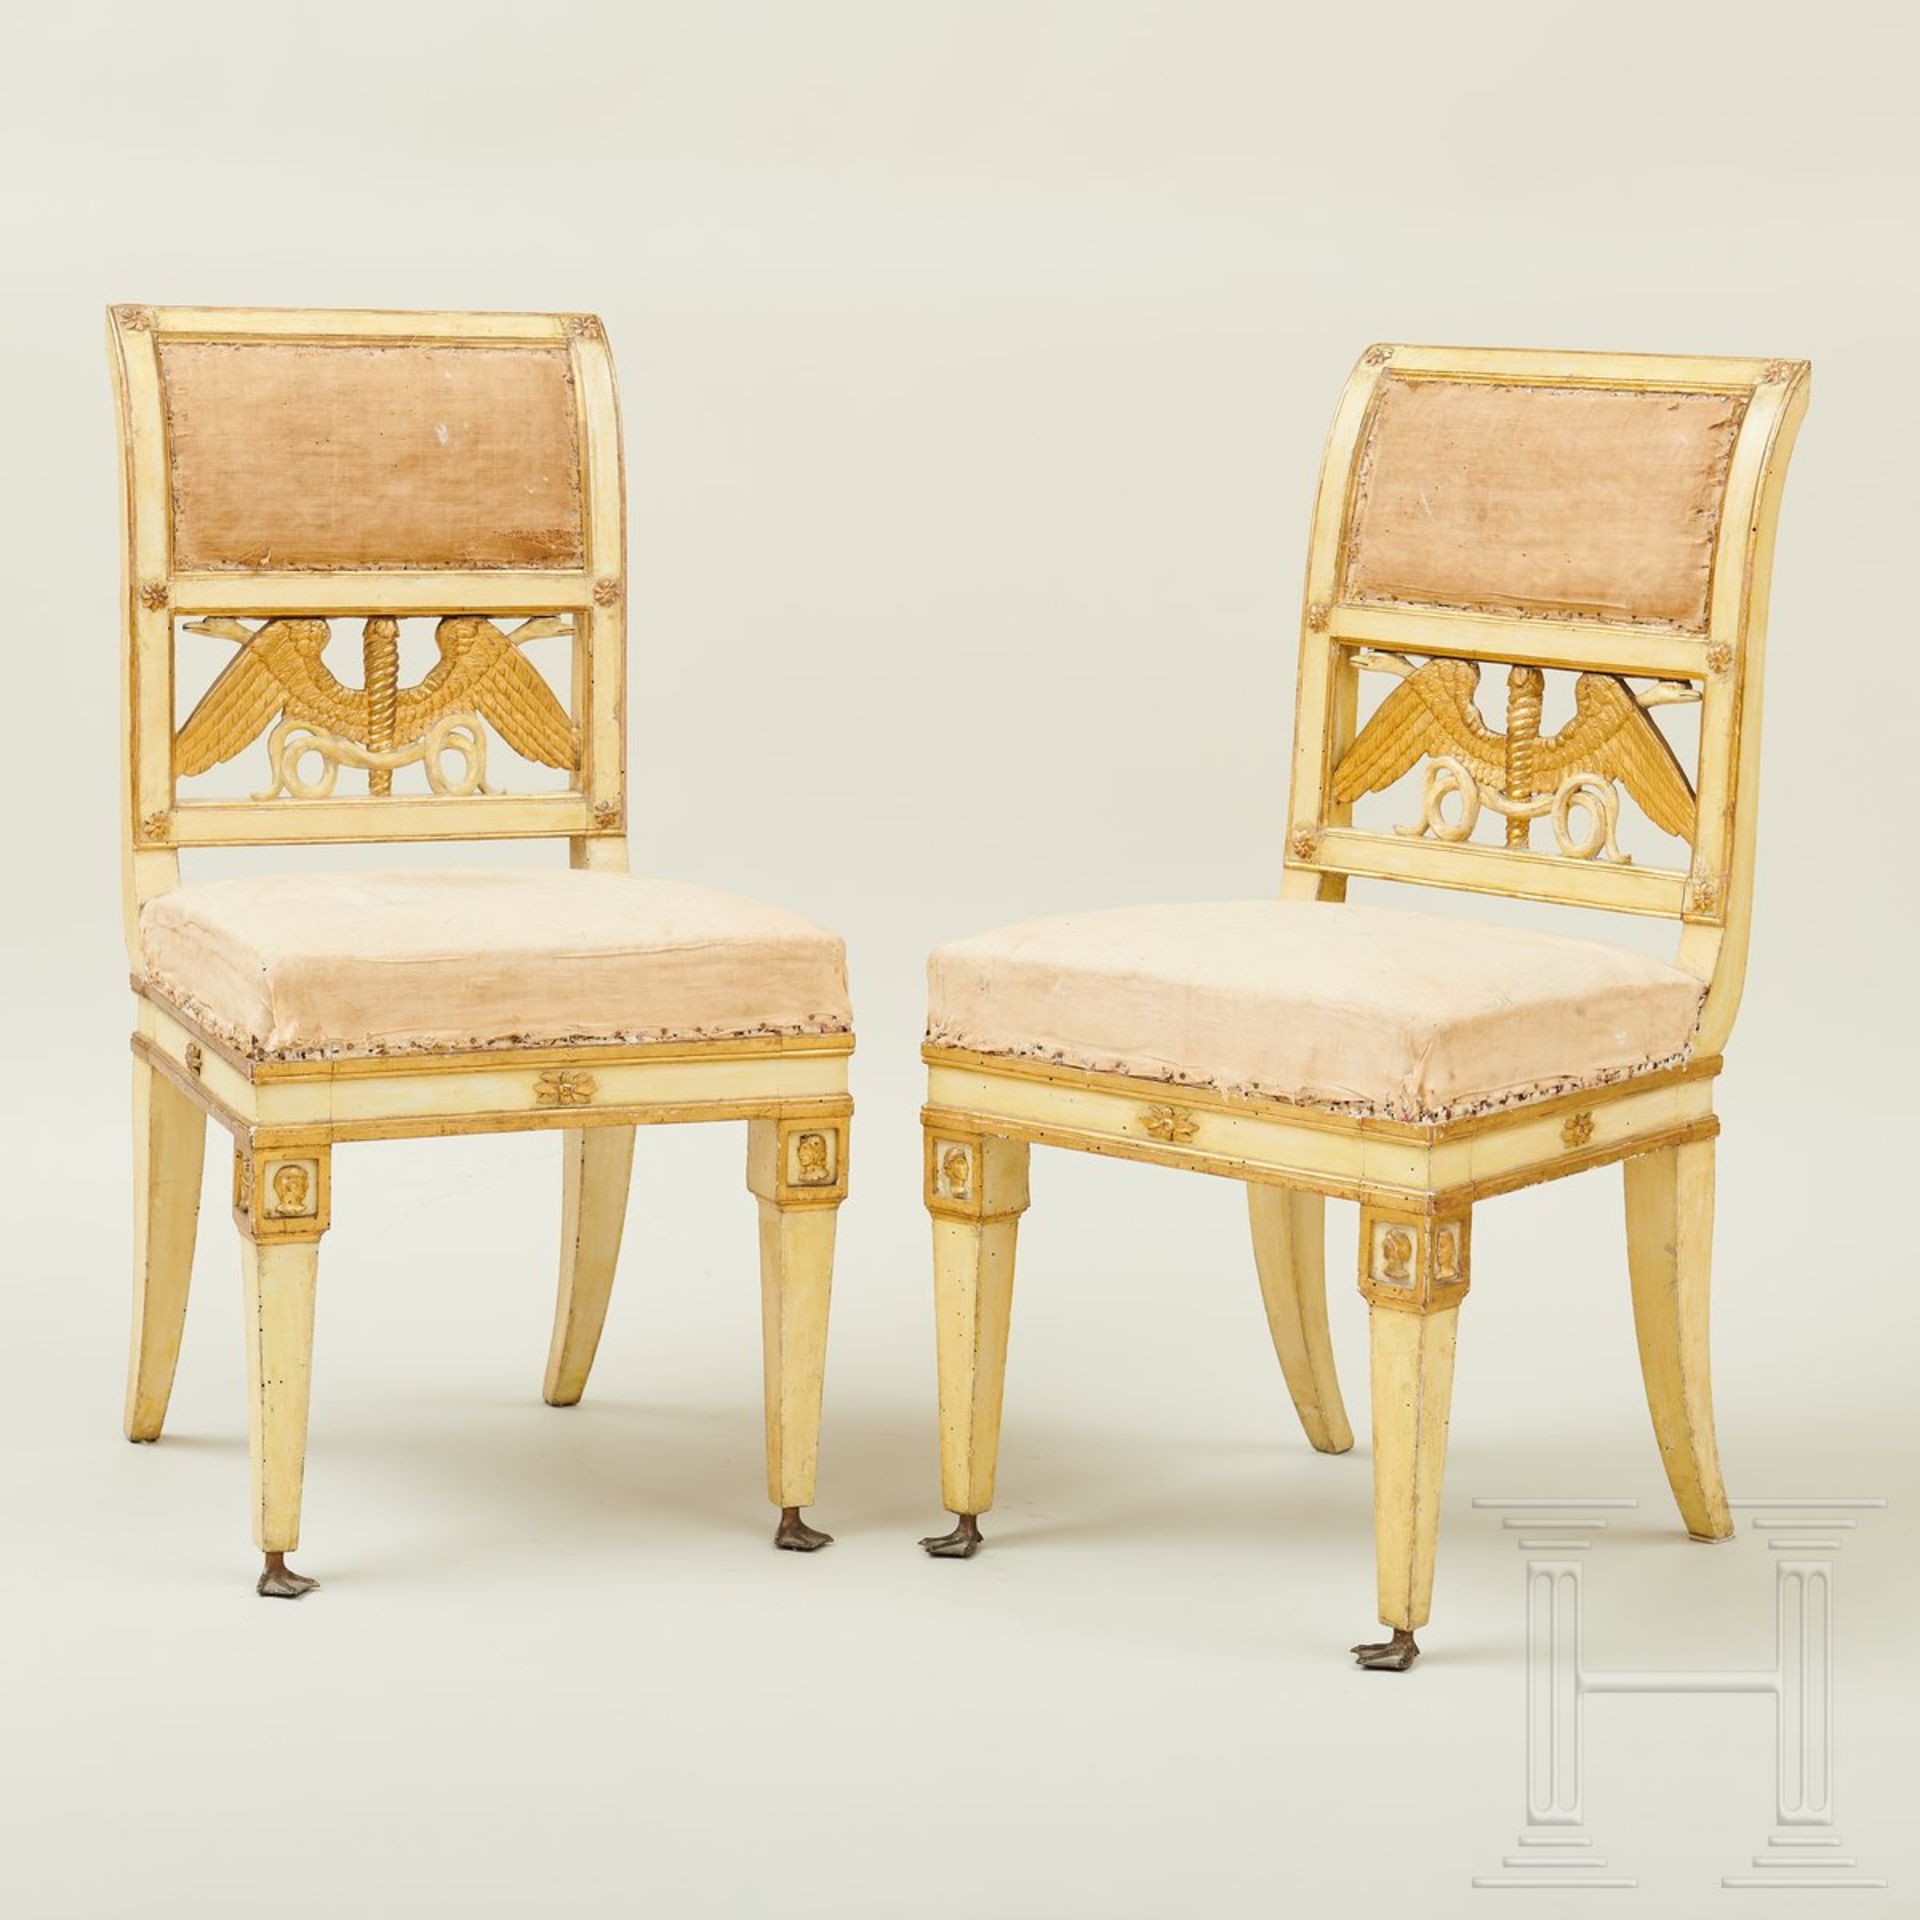 Ein Paar klassizistische Stühle, Lucca, um 1800